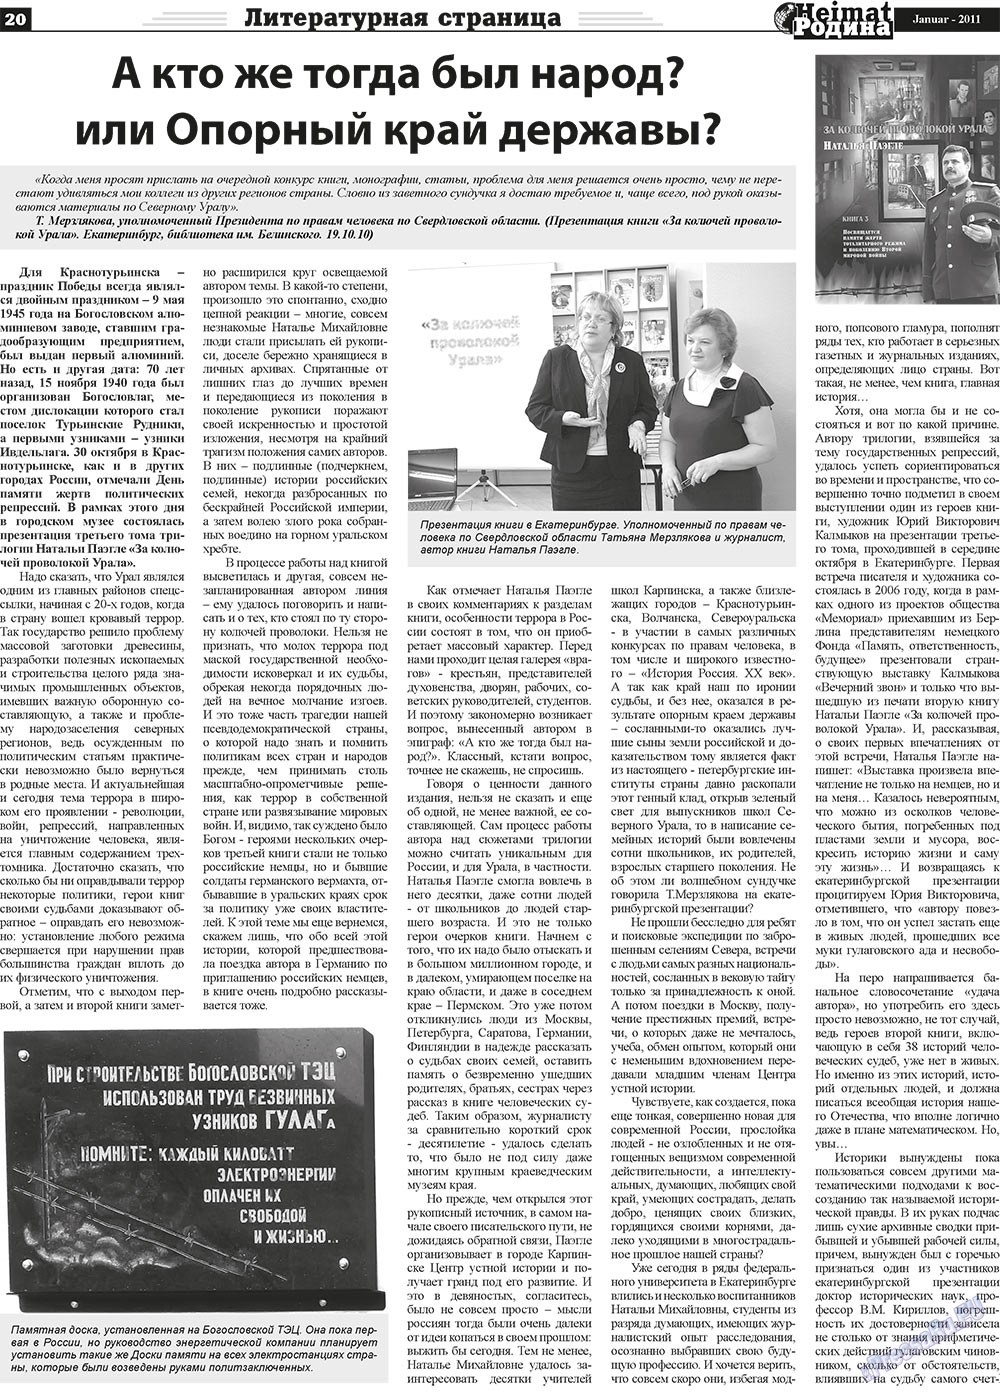 Heimat-Родина (газета). 2011 год, номер 1, стр. 20